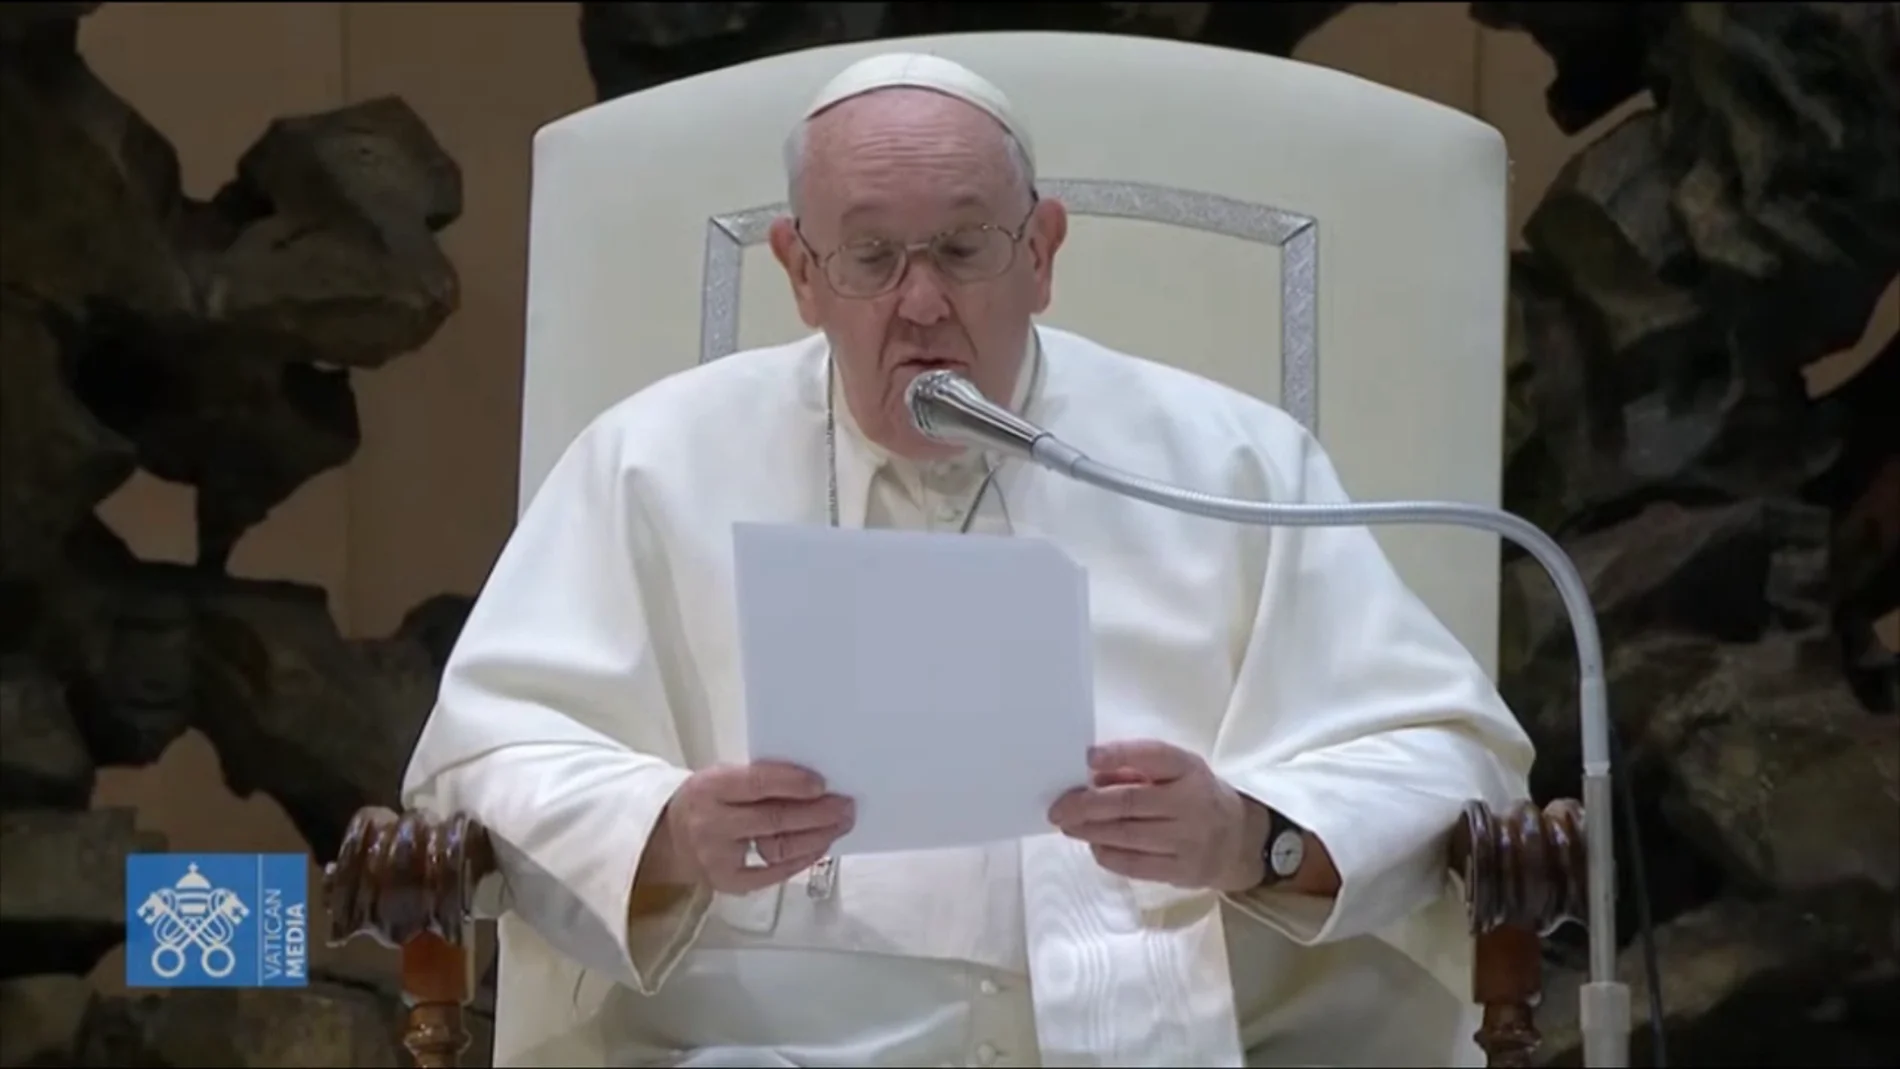 El Papa: “Quisiera que nos uniéramos a quienes, aquí a nuestro lado, rinden homenaje a Benedicto XVI”